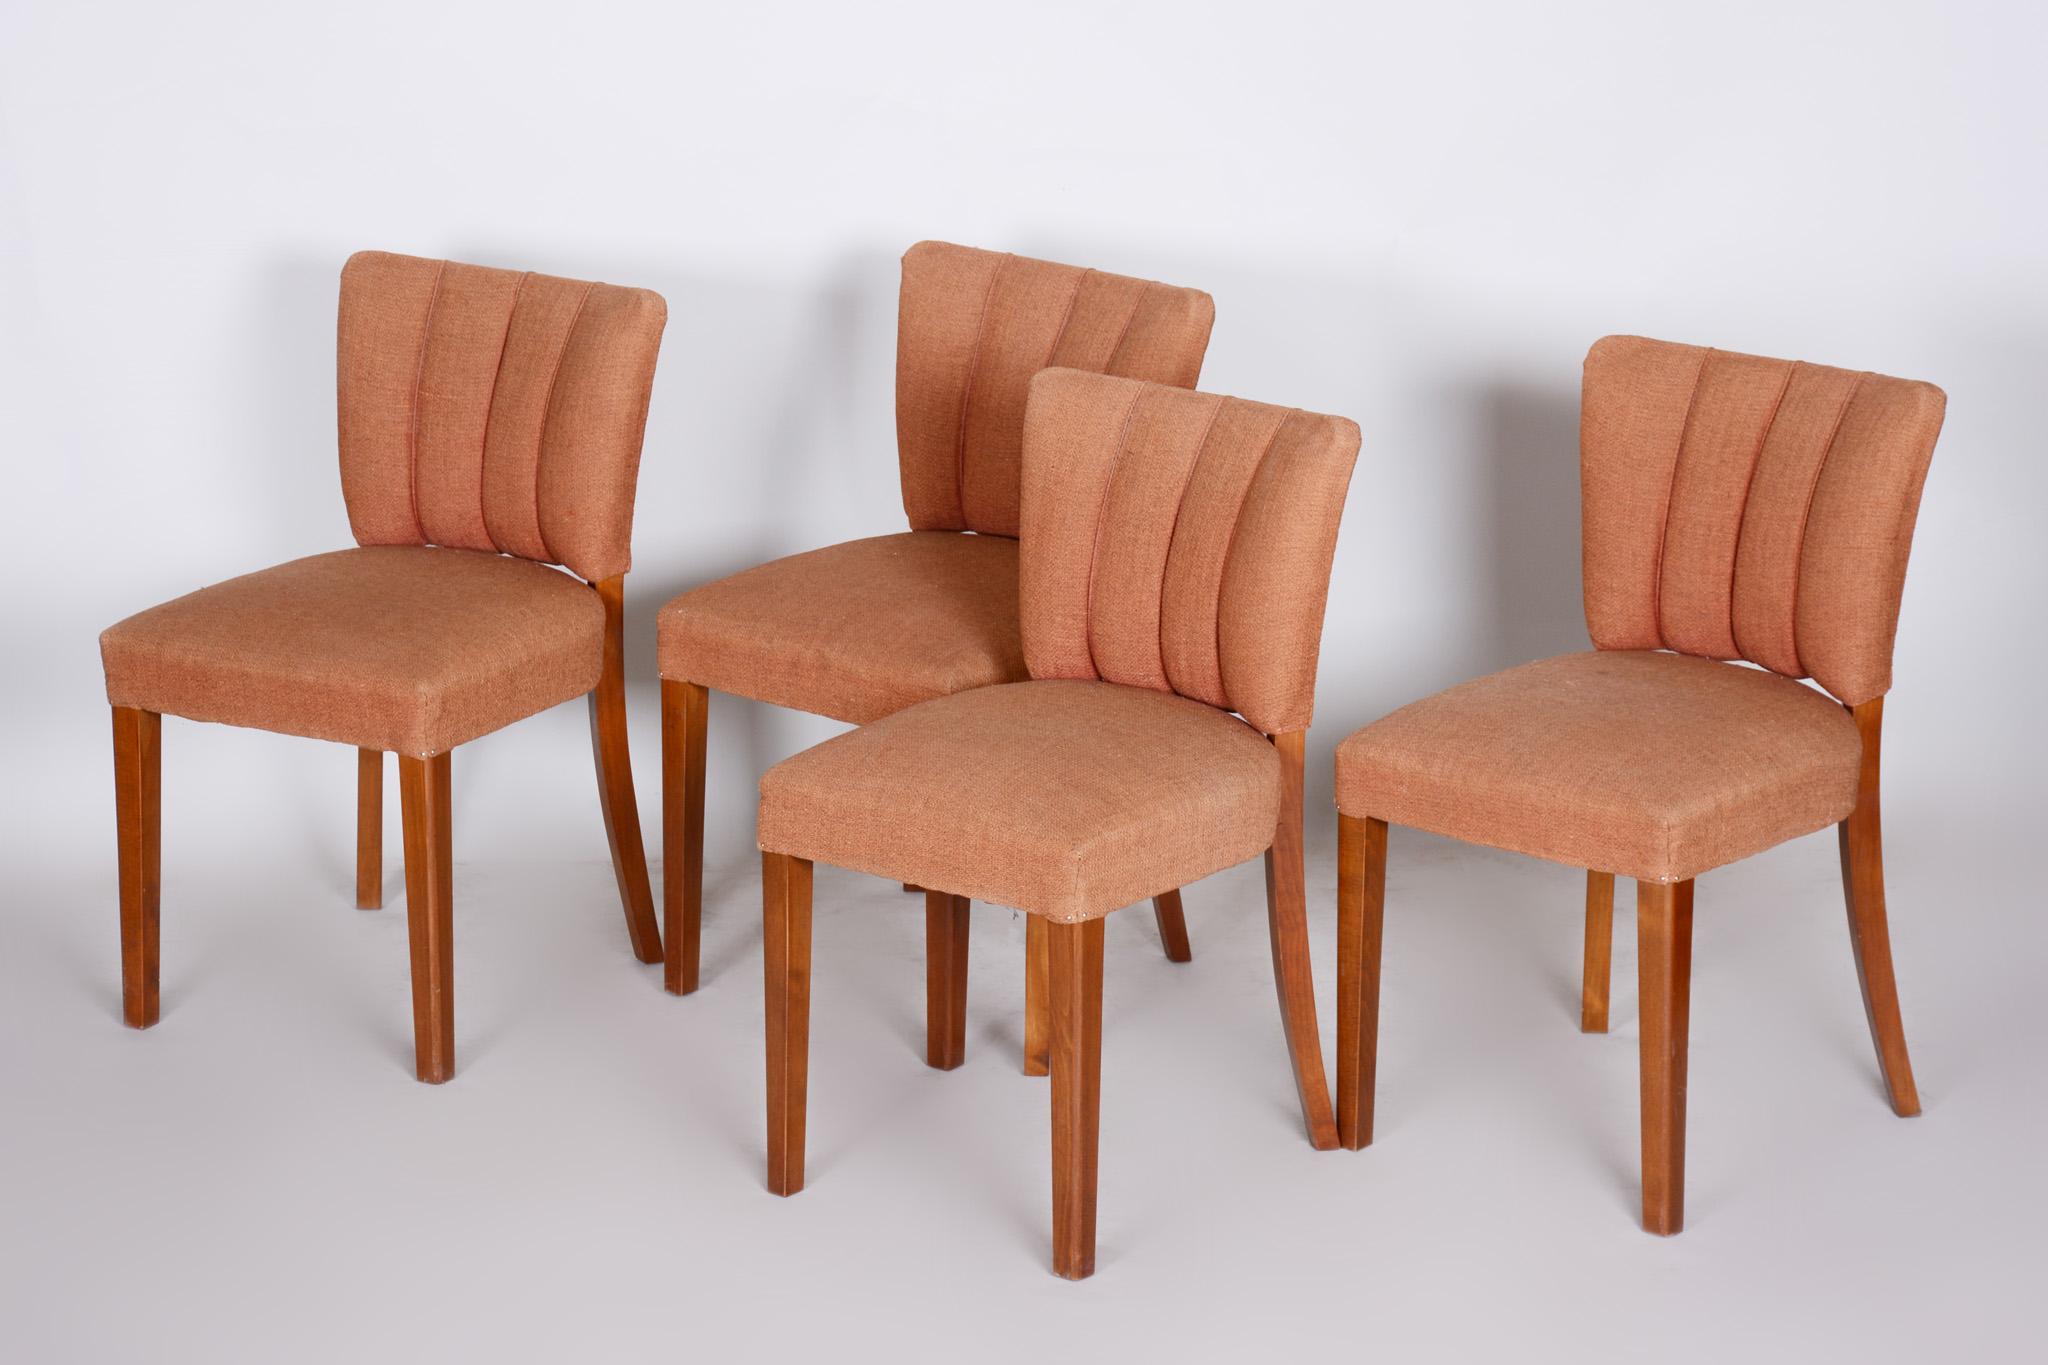 Walnut Art Deco Chairs from Czechoslovakia, 1920-1929 Original Fabric, 4 Pieces  1